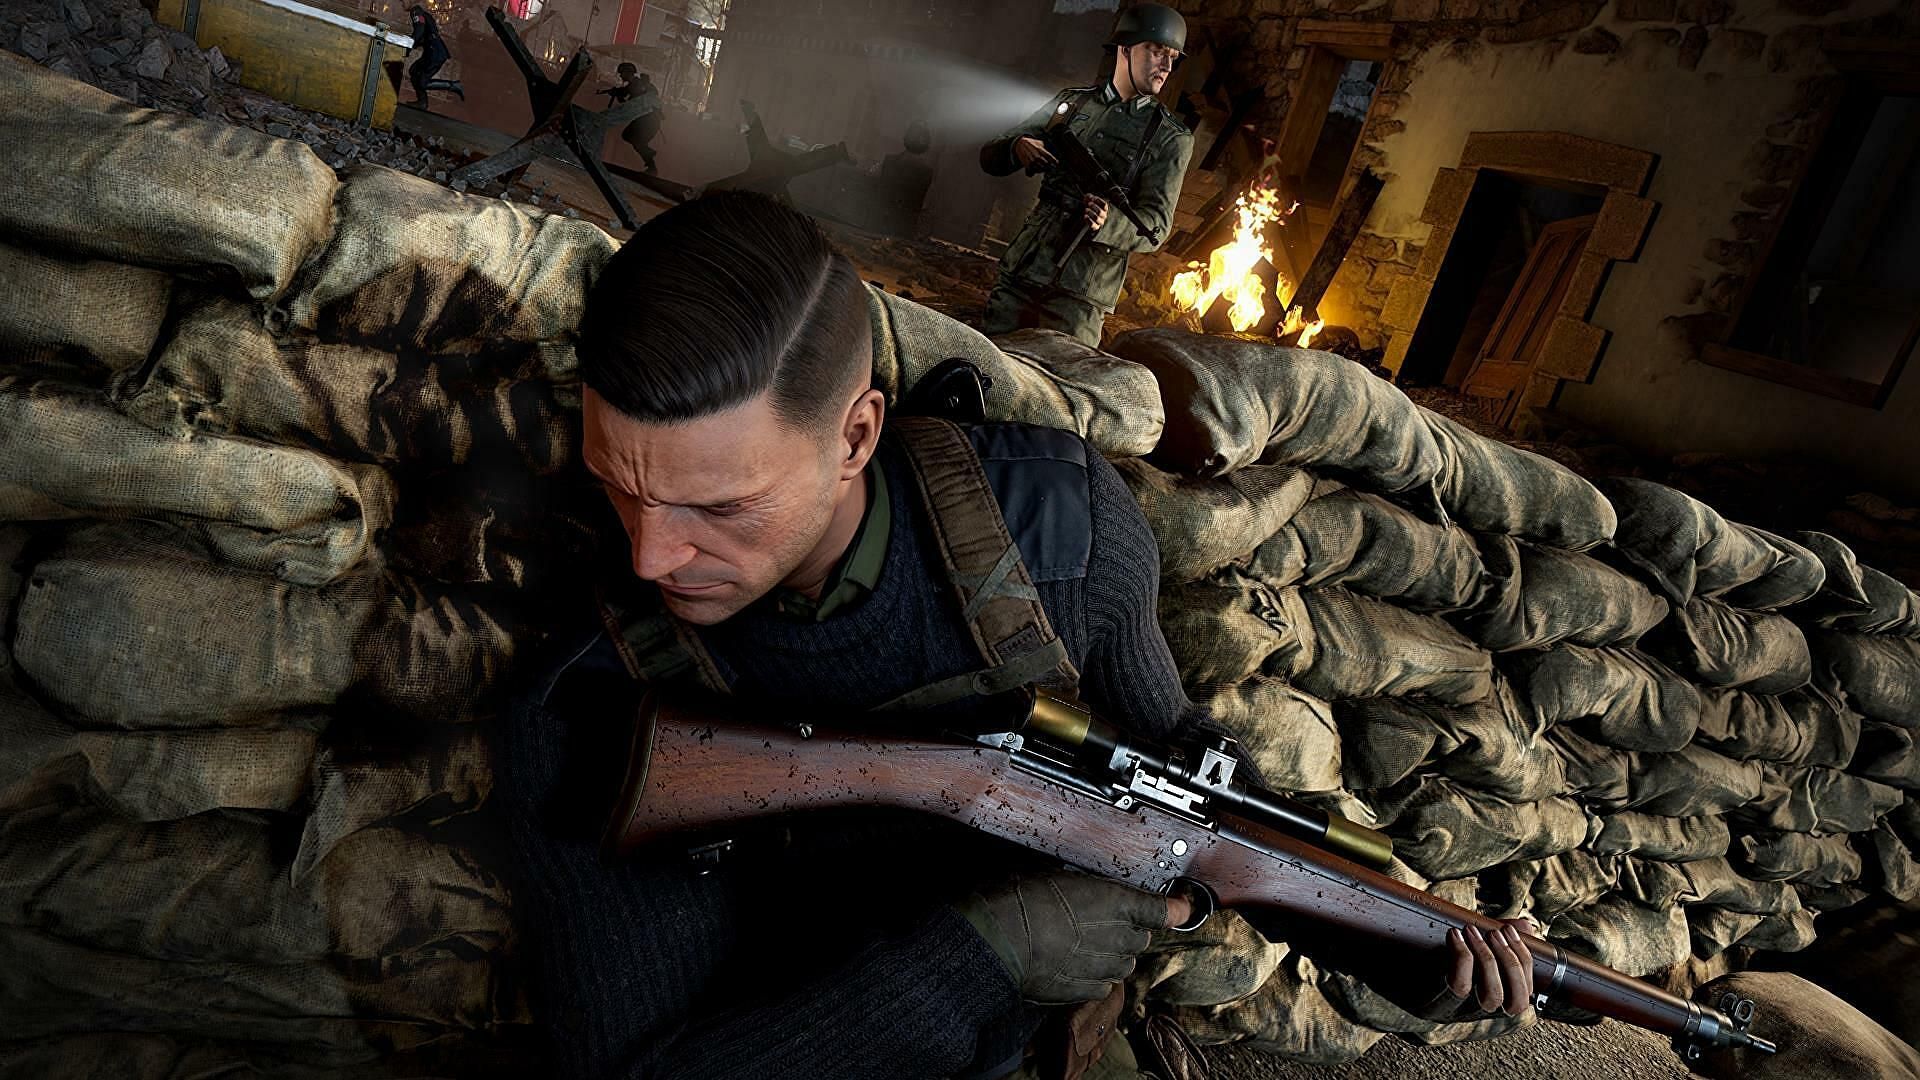 Completing the Festung Guernsey Kill challenge in Sniper Elite 5 (image via Sniper Elite 5)